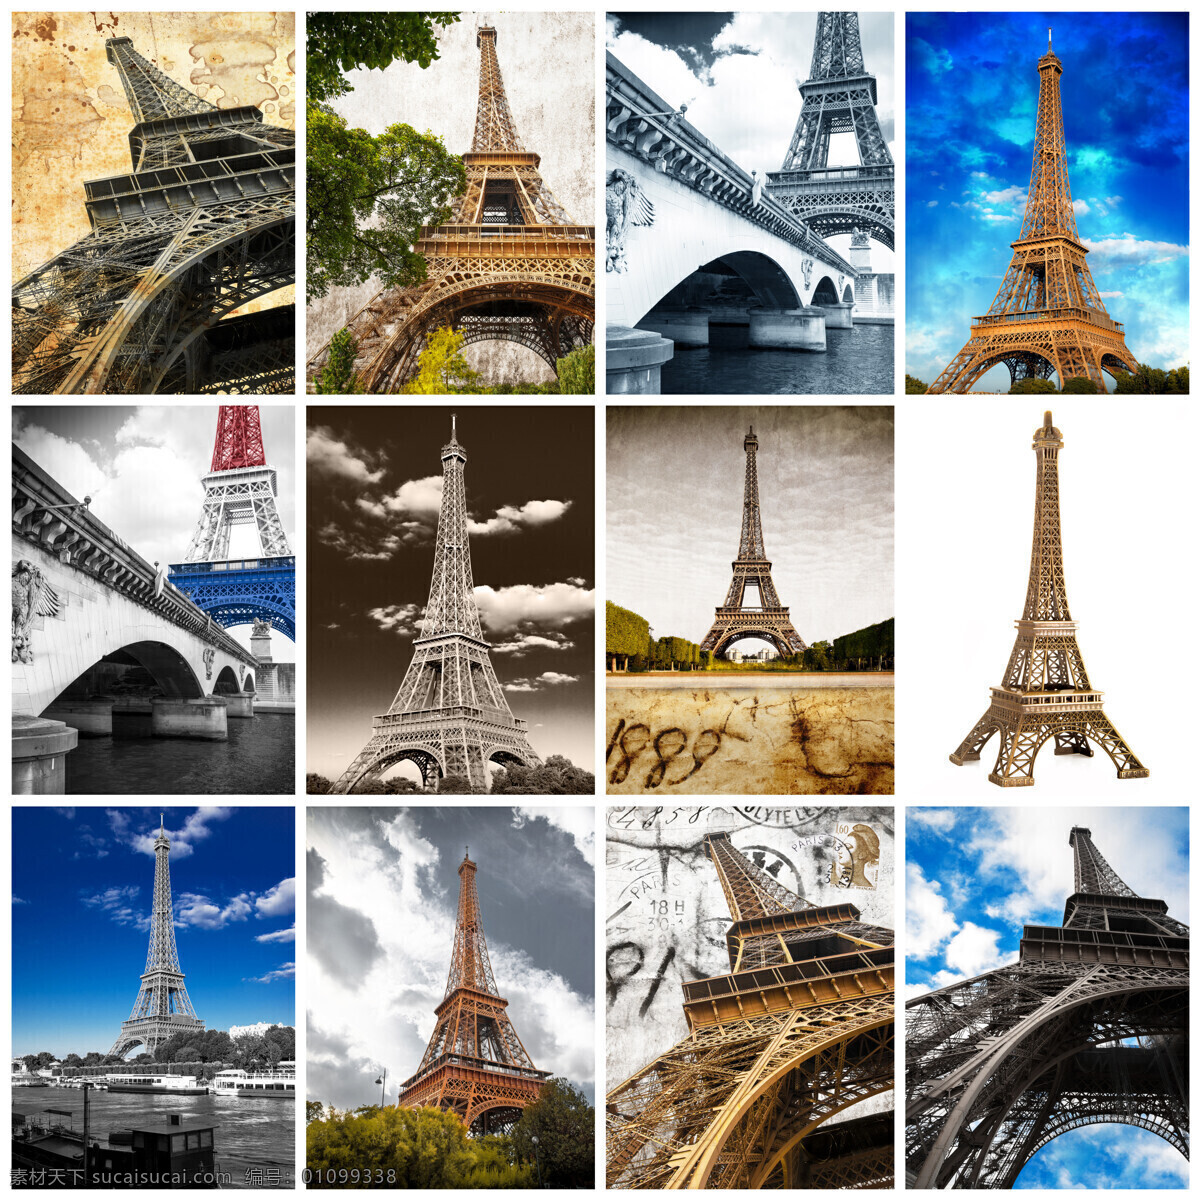 埃菲尔铁塔 风景 巴黎风景 法国旅游景点 文明古迹 美丽风景 自然风景 自然景观 白色